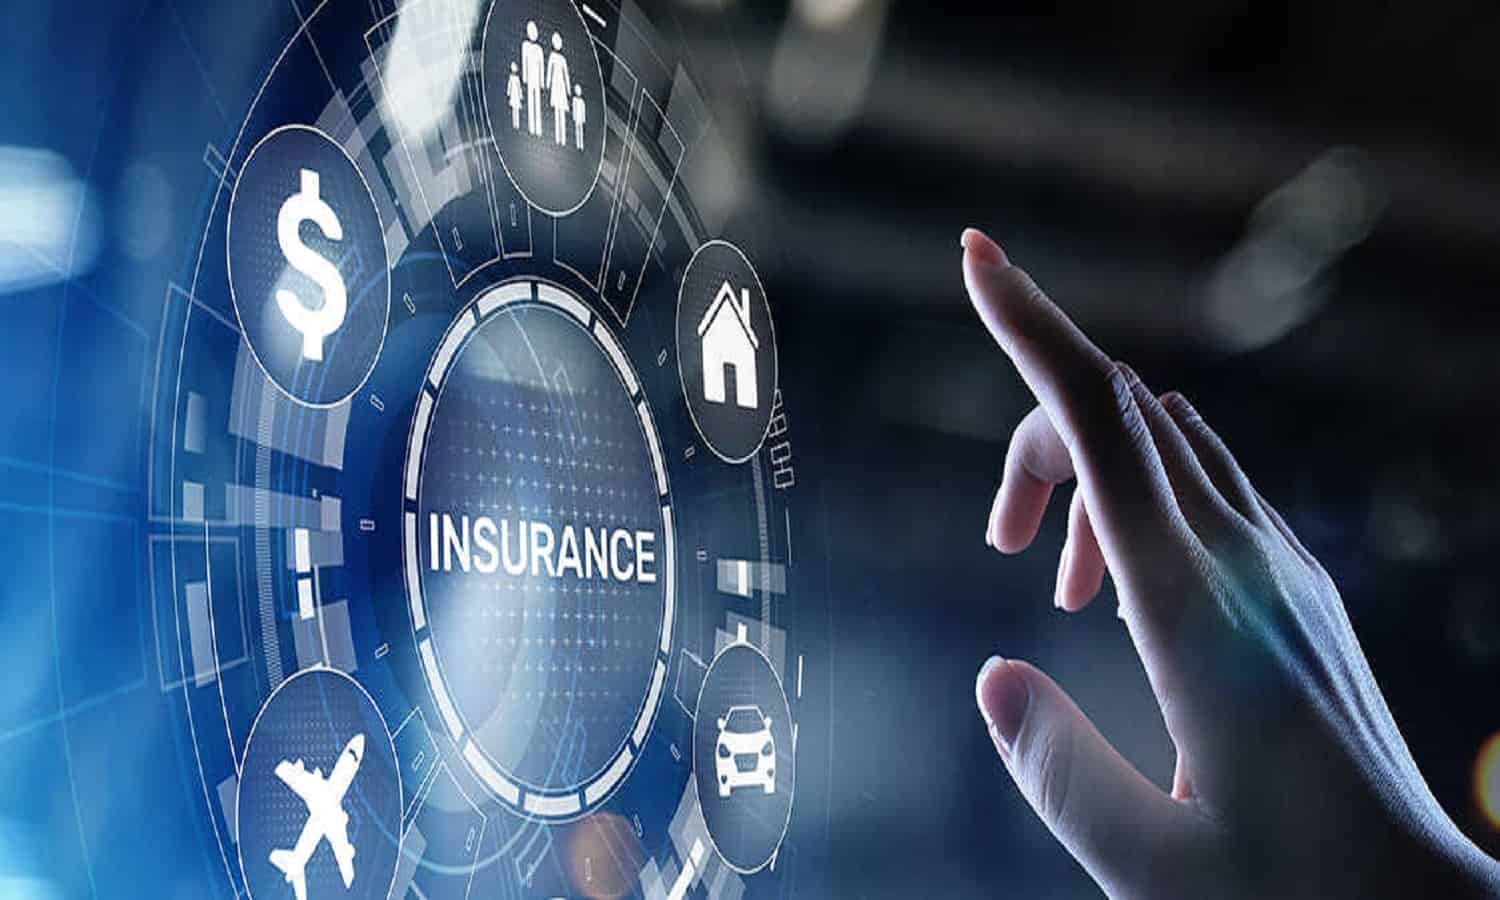 استفسر تتعاون مع الوطنية للتأمين لتمكين شراء بوليصة التأمين عبر الإنترنت